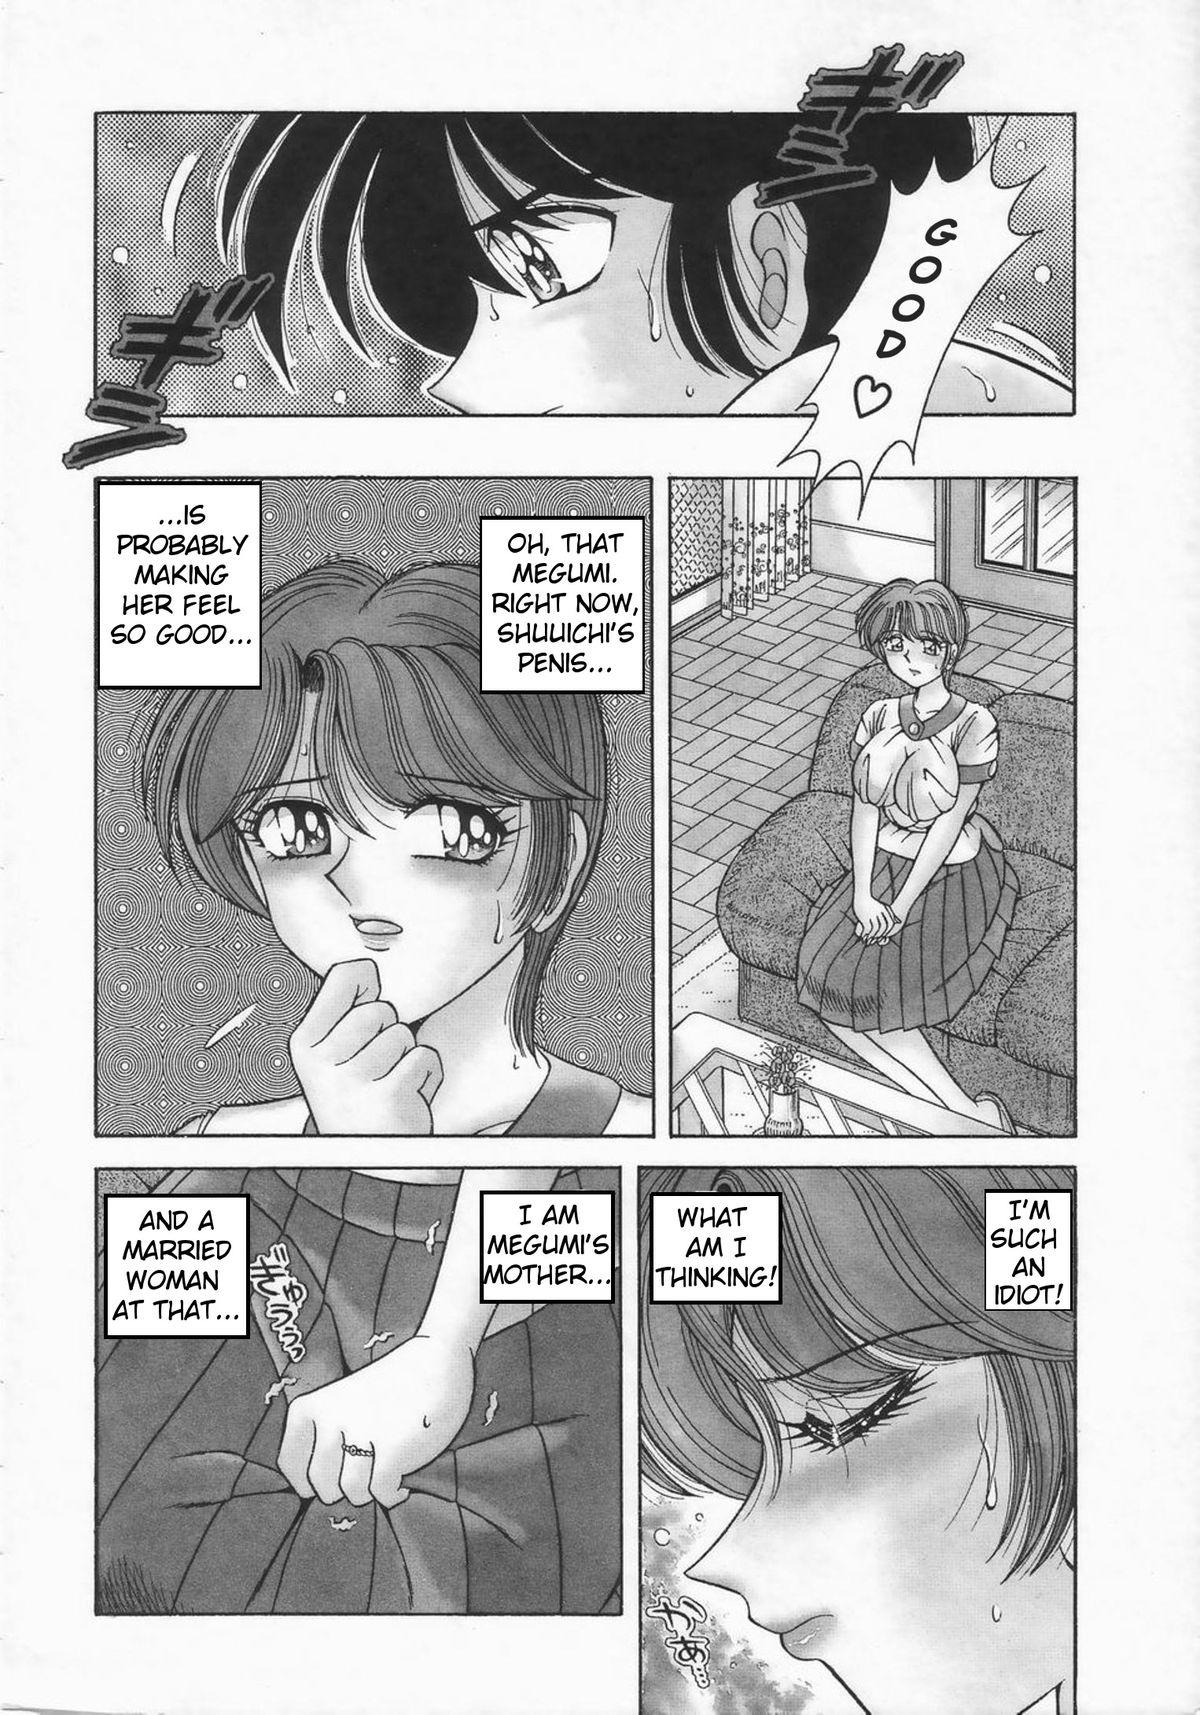 Slutty DESIRE Solo Female - Page 5